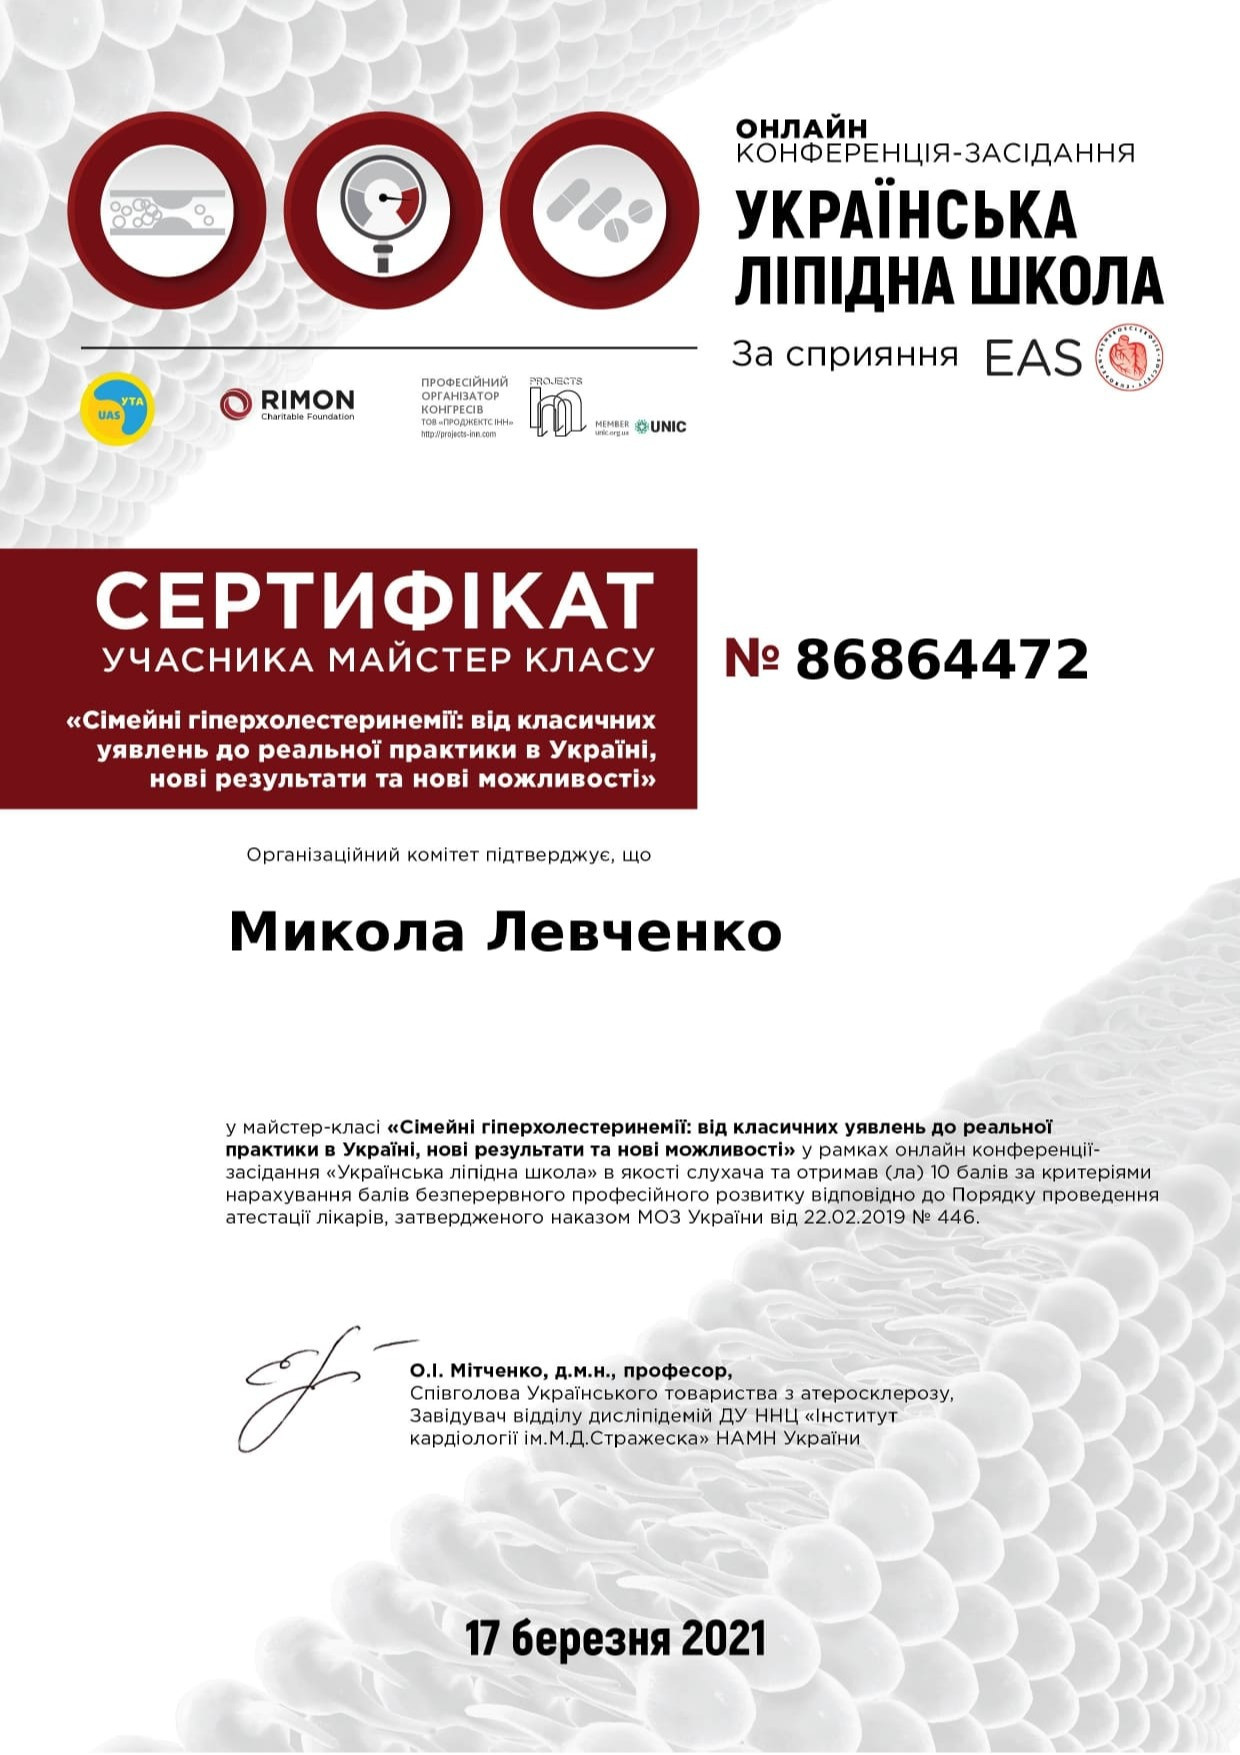 Сертификат об участии в мастер-классе